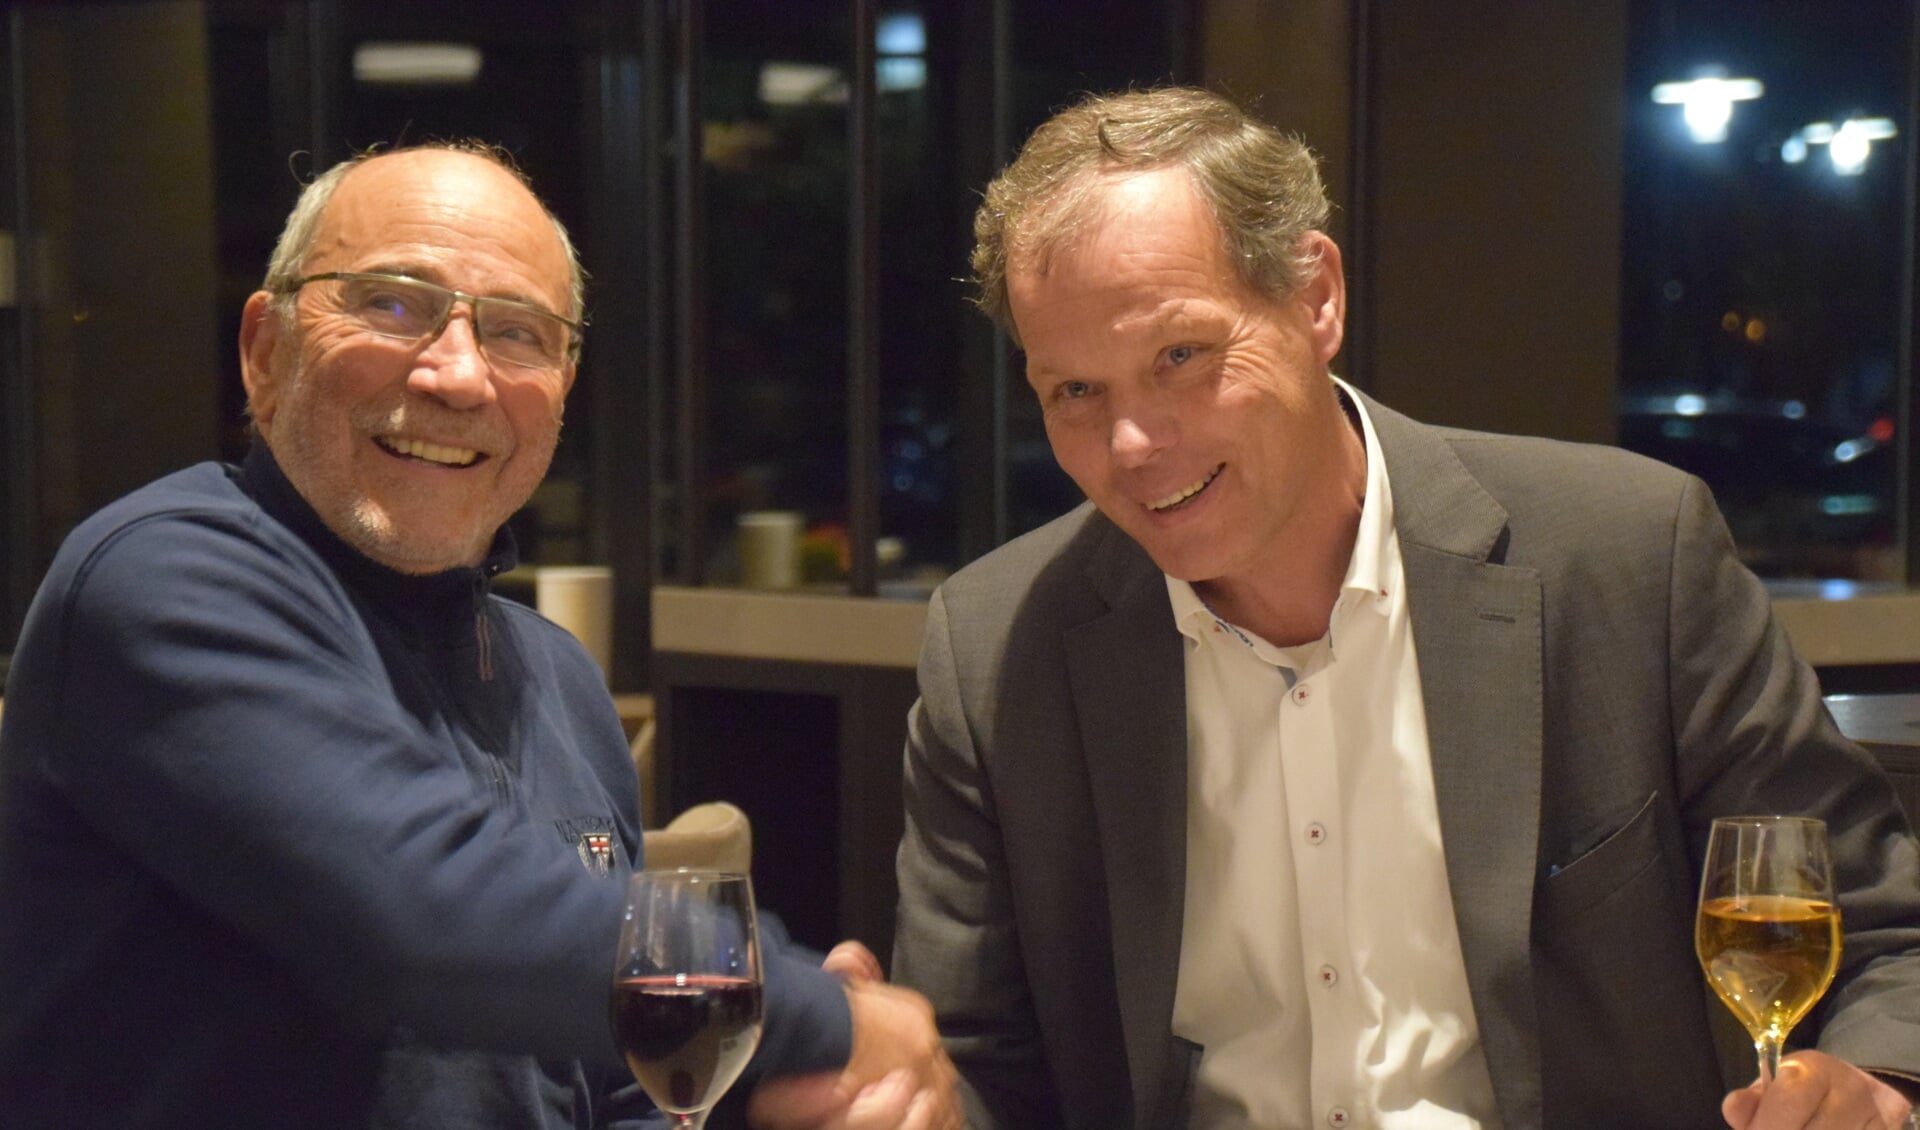 Klaas van der Valk: 'Bij een goed gesprek hoort een goed glas wijn'.